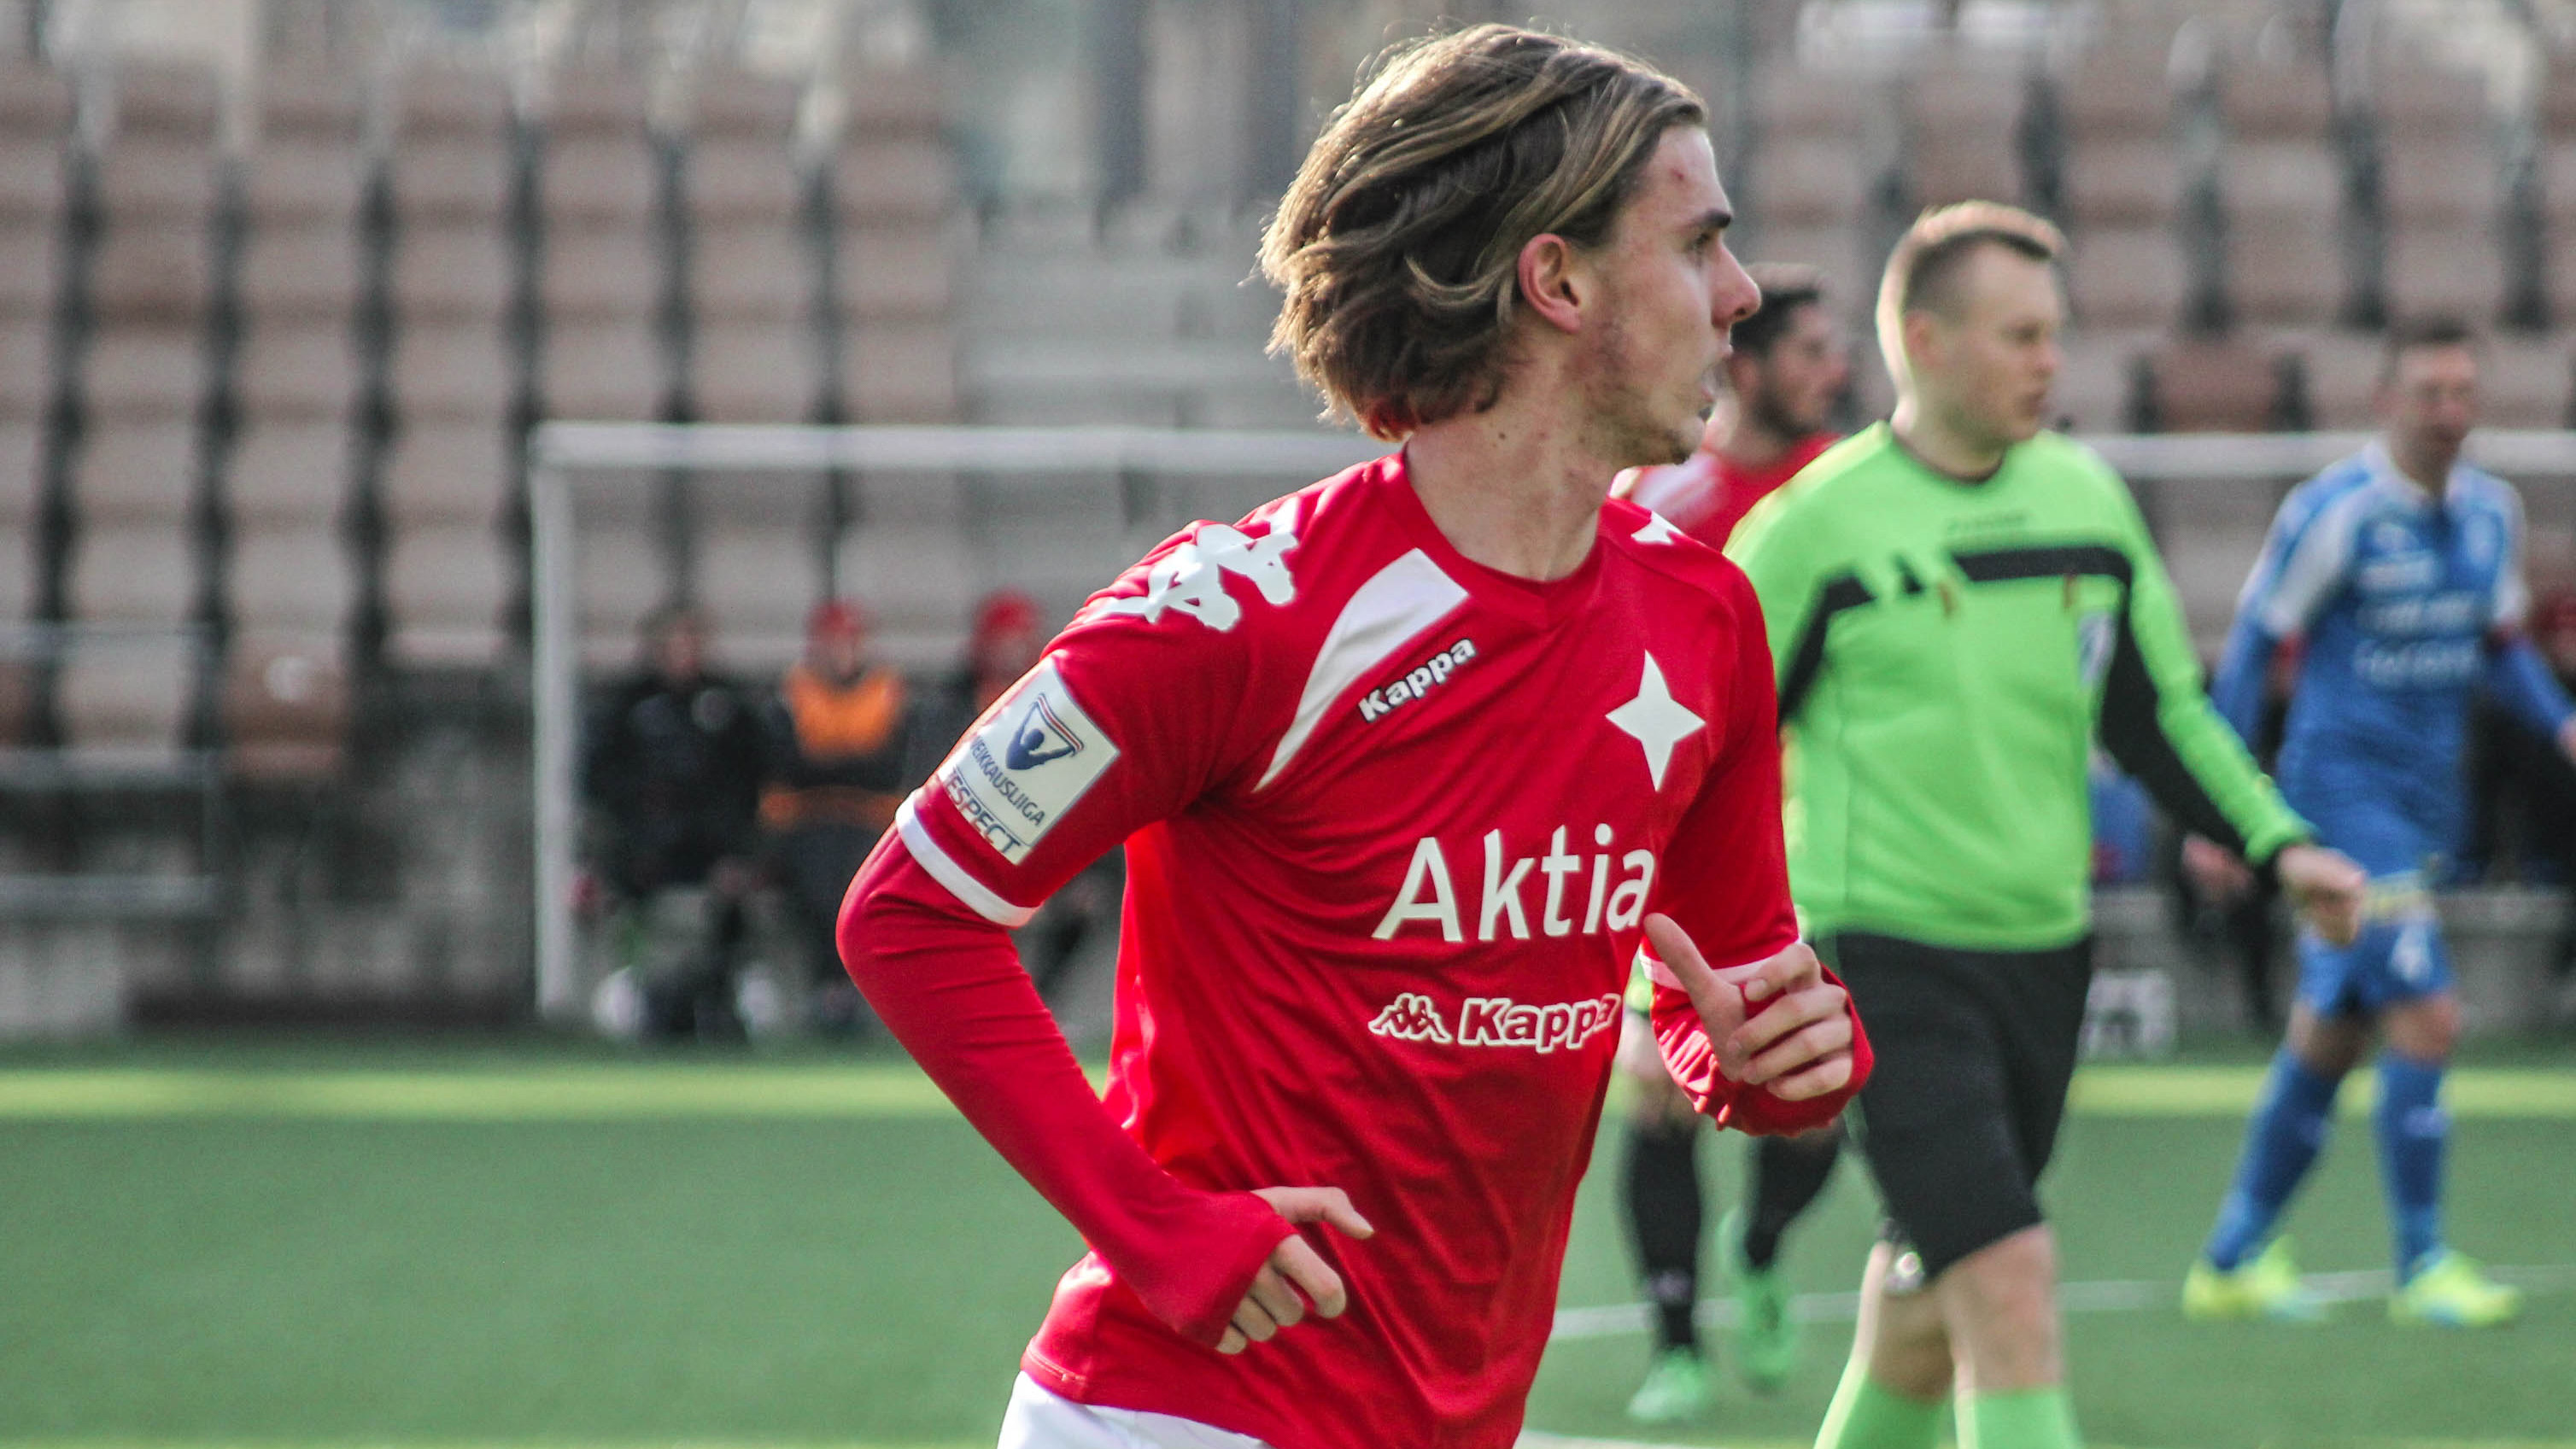 HIFK:n Daniel Rantanen onnistui maalinteossa U18-maajoukkueessa